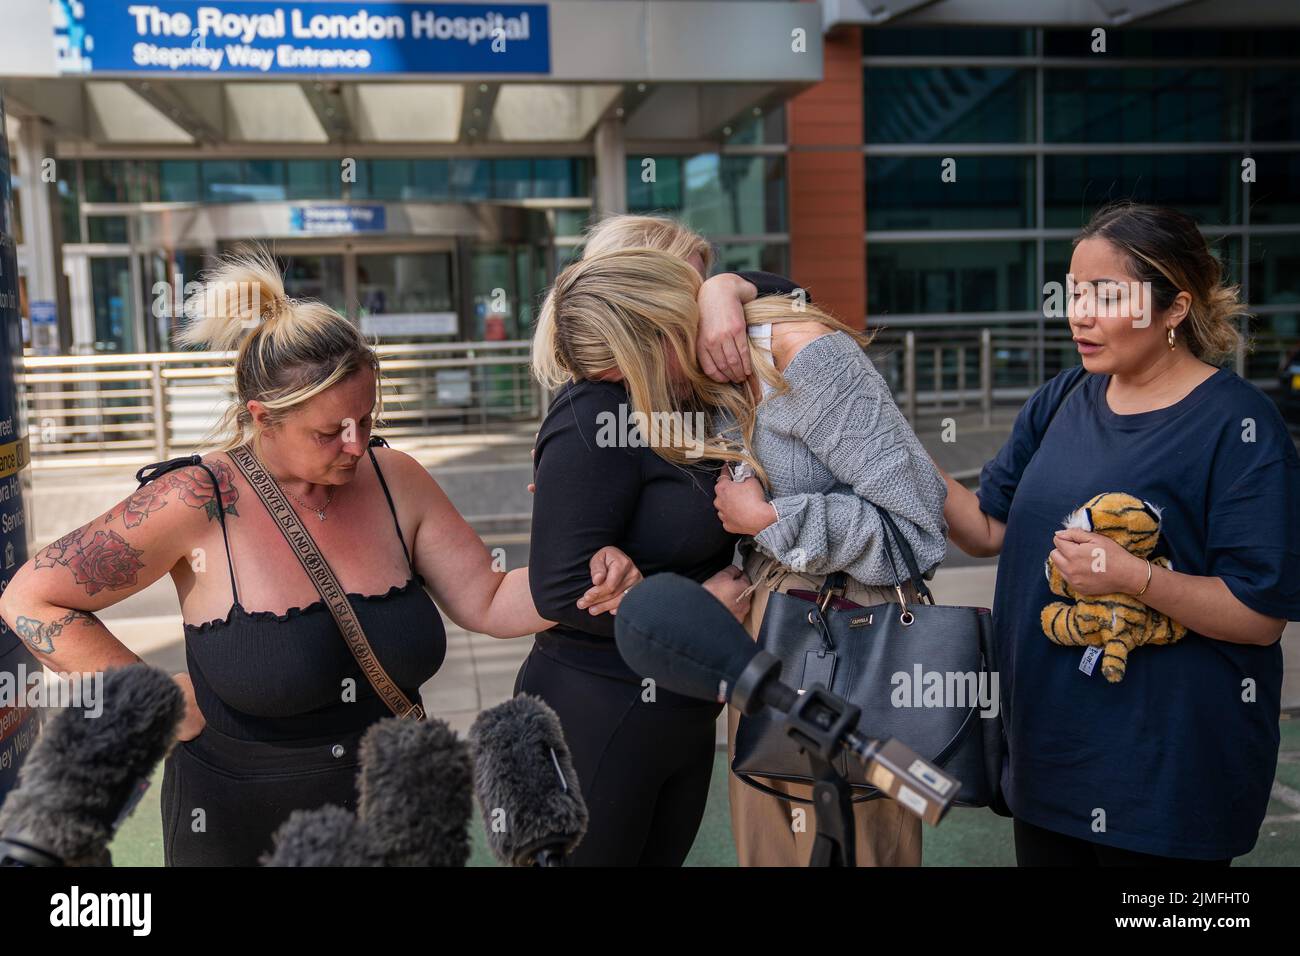 Hollie Dance (segunda a la izquierda) Rodeada por familiares y amigos, en las afueras del hospital Royal London en Whitechapel, al este de Londres, hablando con los medios de comunicación tras la muerte de su hijo de 12 años Archie Battersbee. Fecha de la foto: Sábado 6 de agosto de 2022. Foto de stock